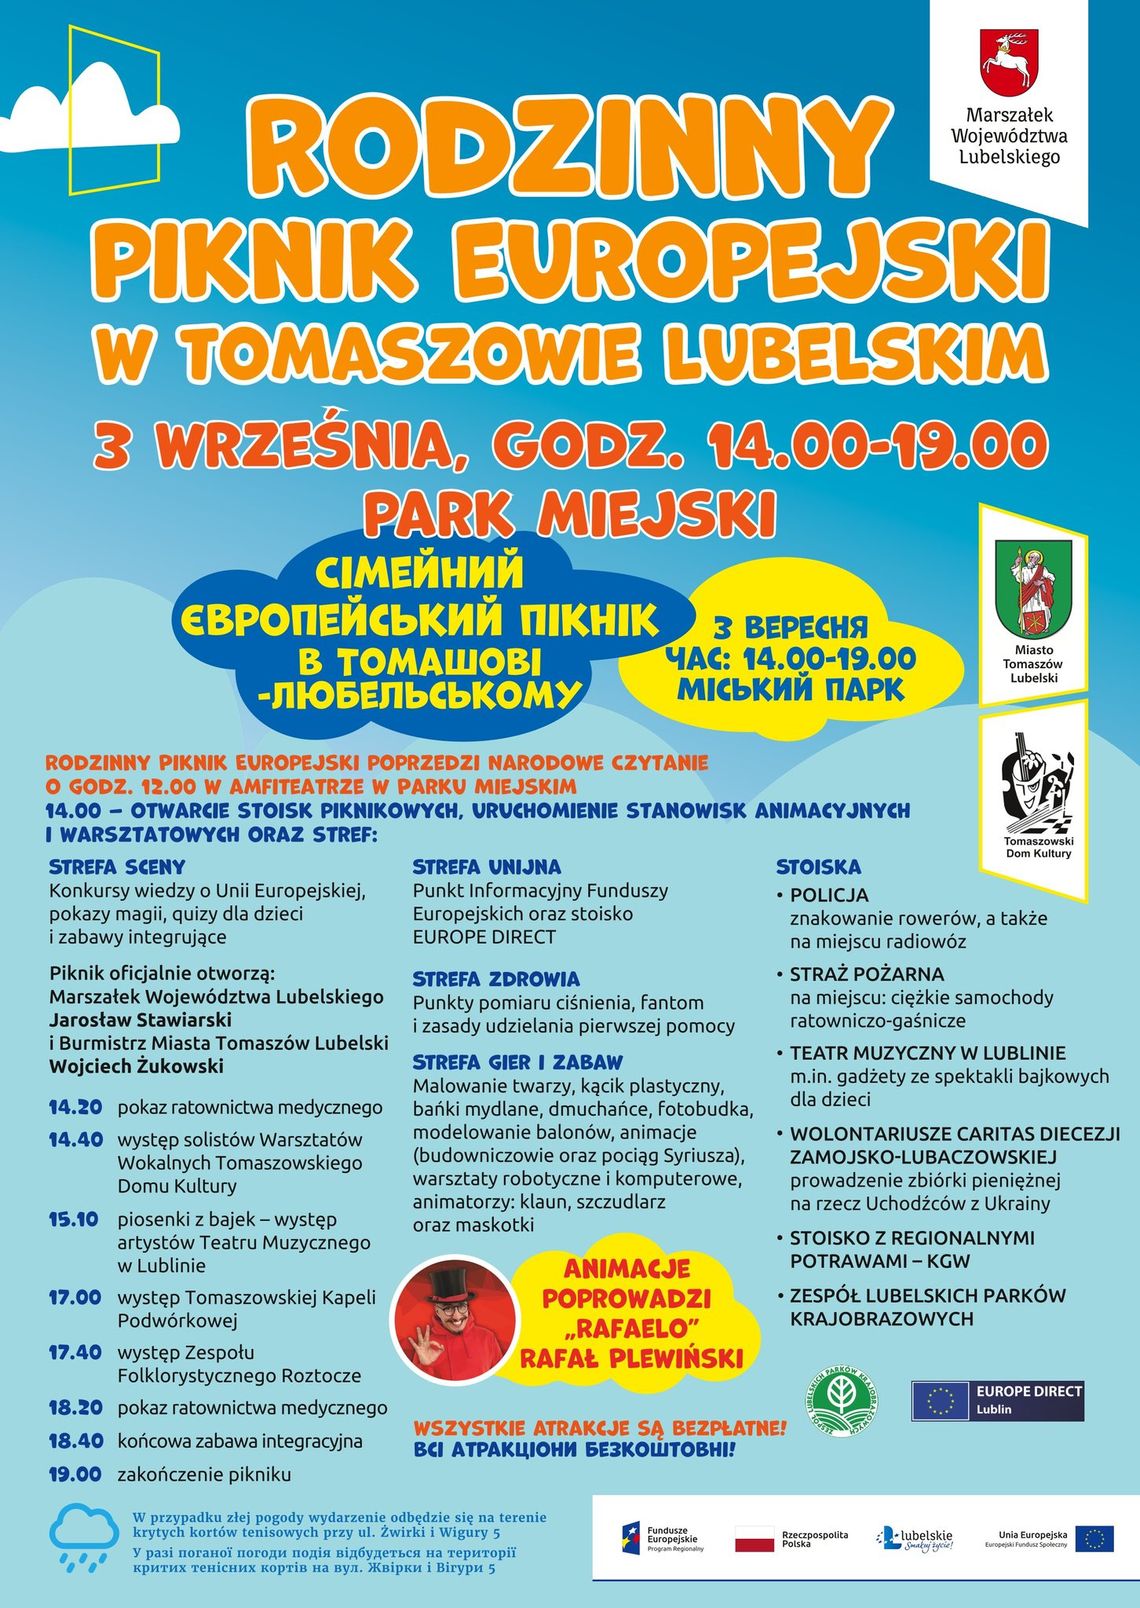 Rodzinny Piknik Europejski i Narodowe Czytanie w Tomaszowie